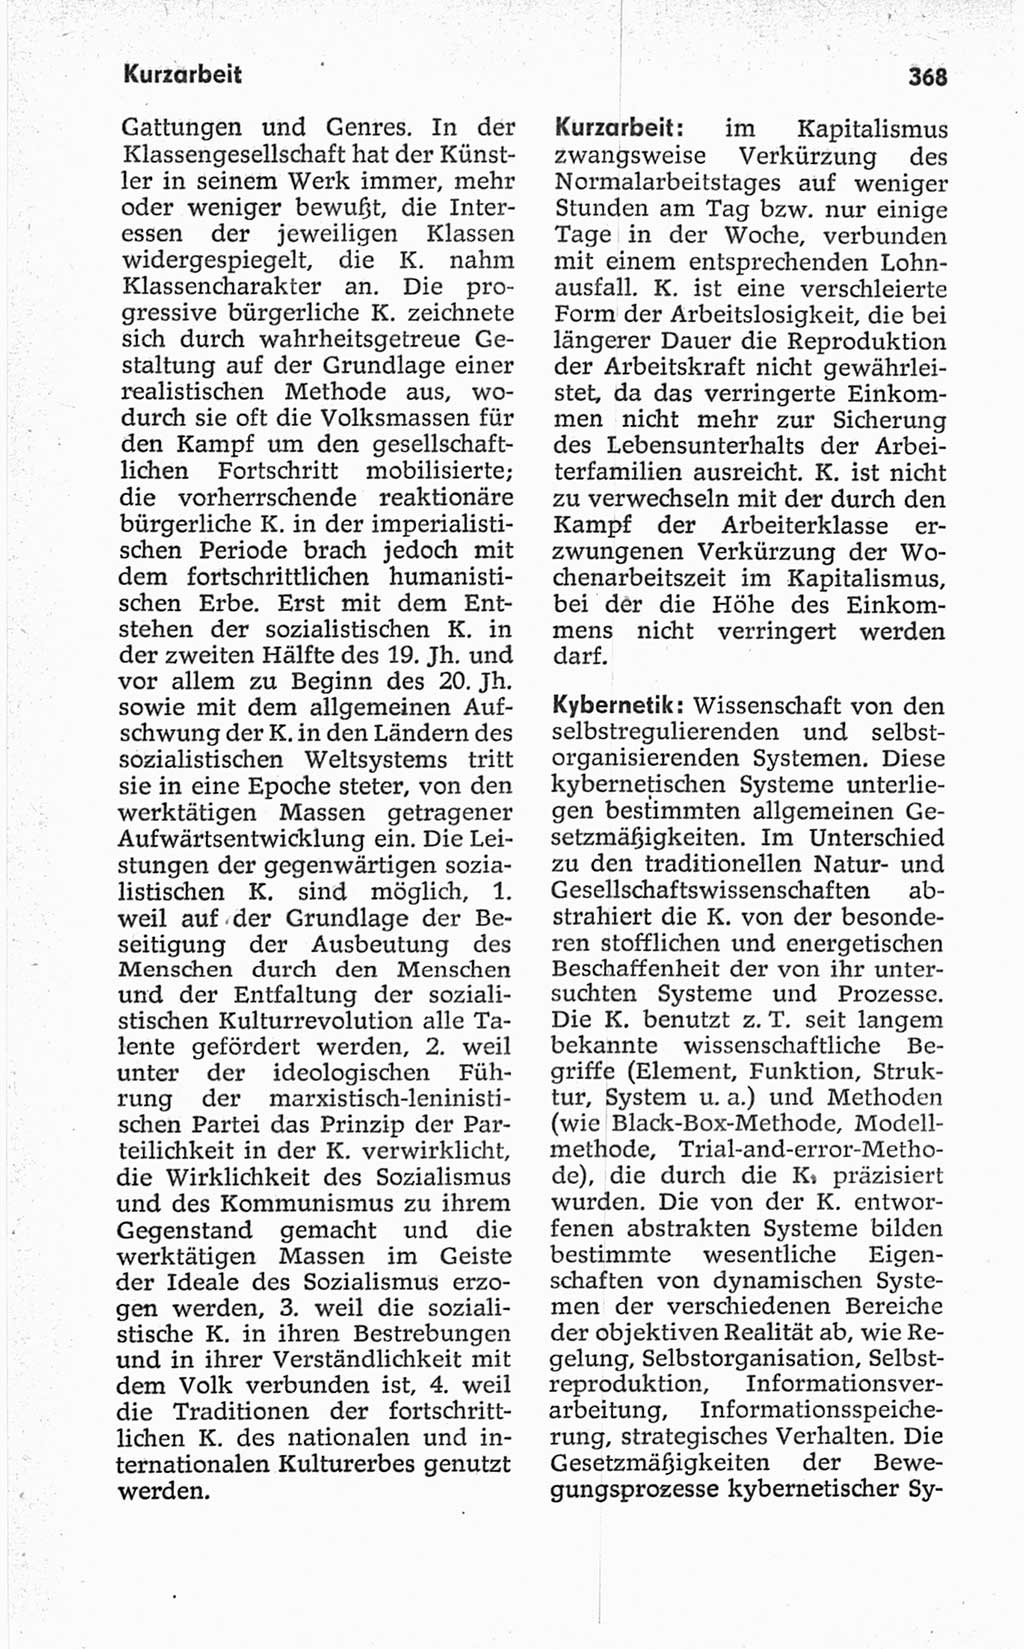 Kleines politisches Wörterbuch [Deutsche Demokratische Republik (DDR)] 1967, Seite 368 (Kl. pol. Wb. DDR 1967, S. 368)